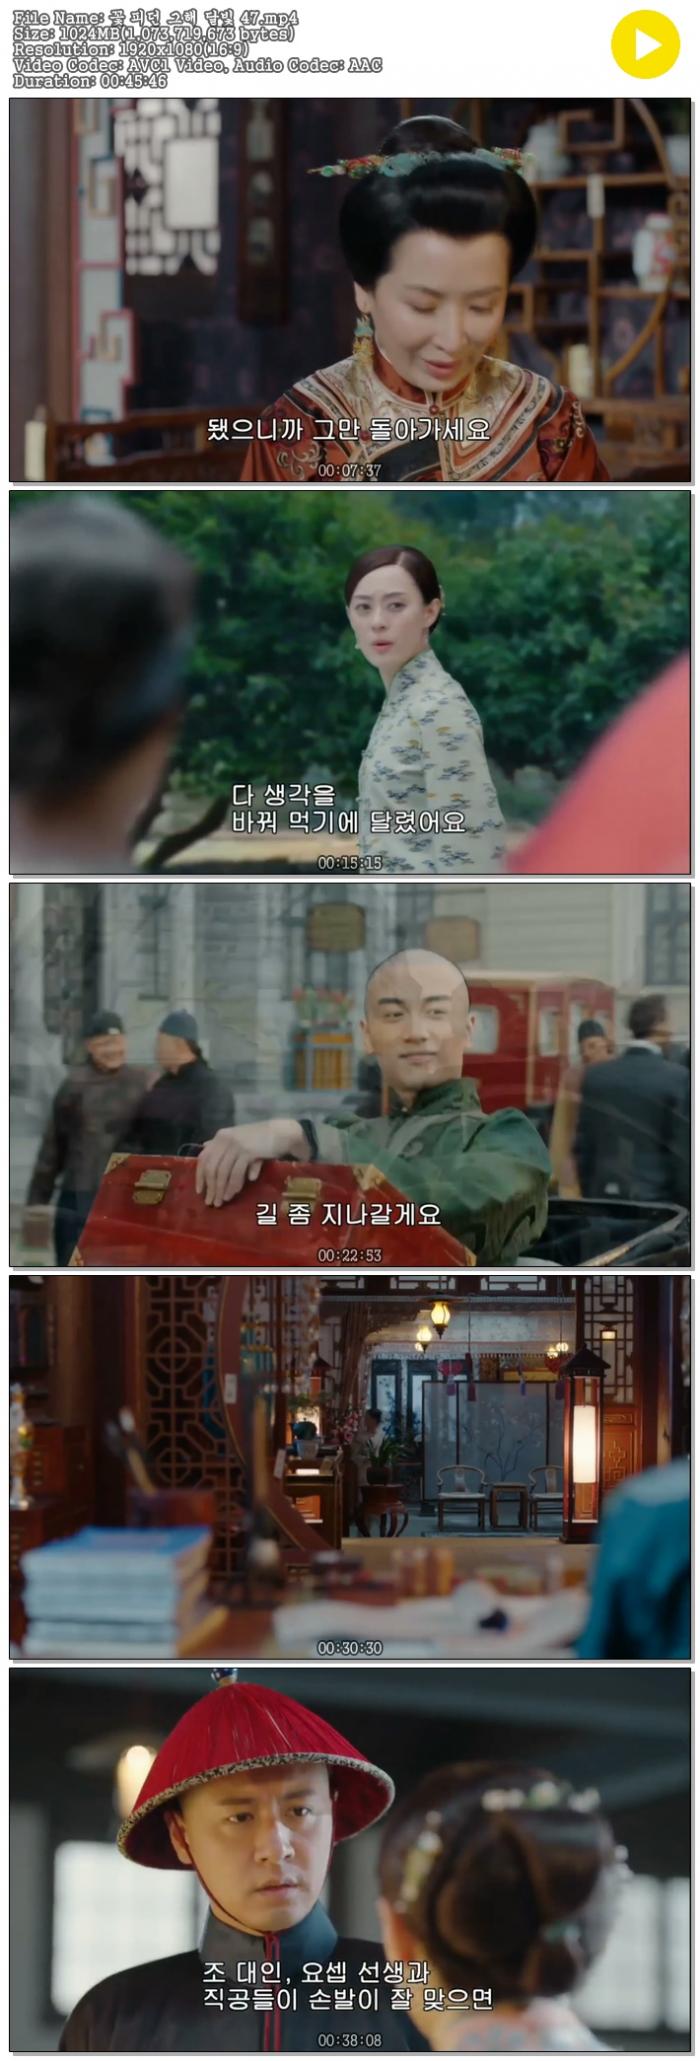 [2017] 꽃 피던 그해 달빛 47화 1080p - 자체자막